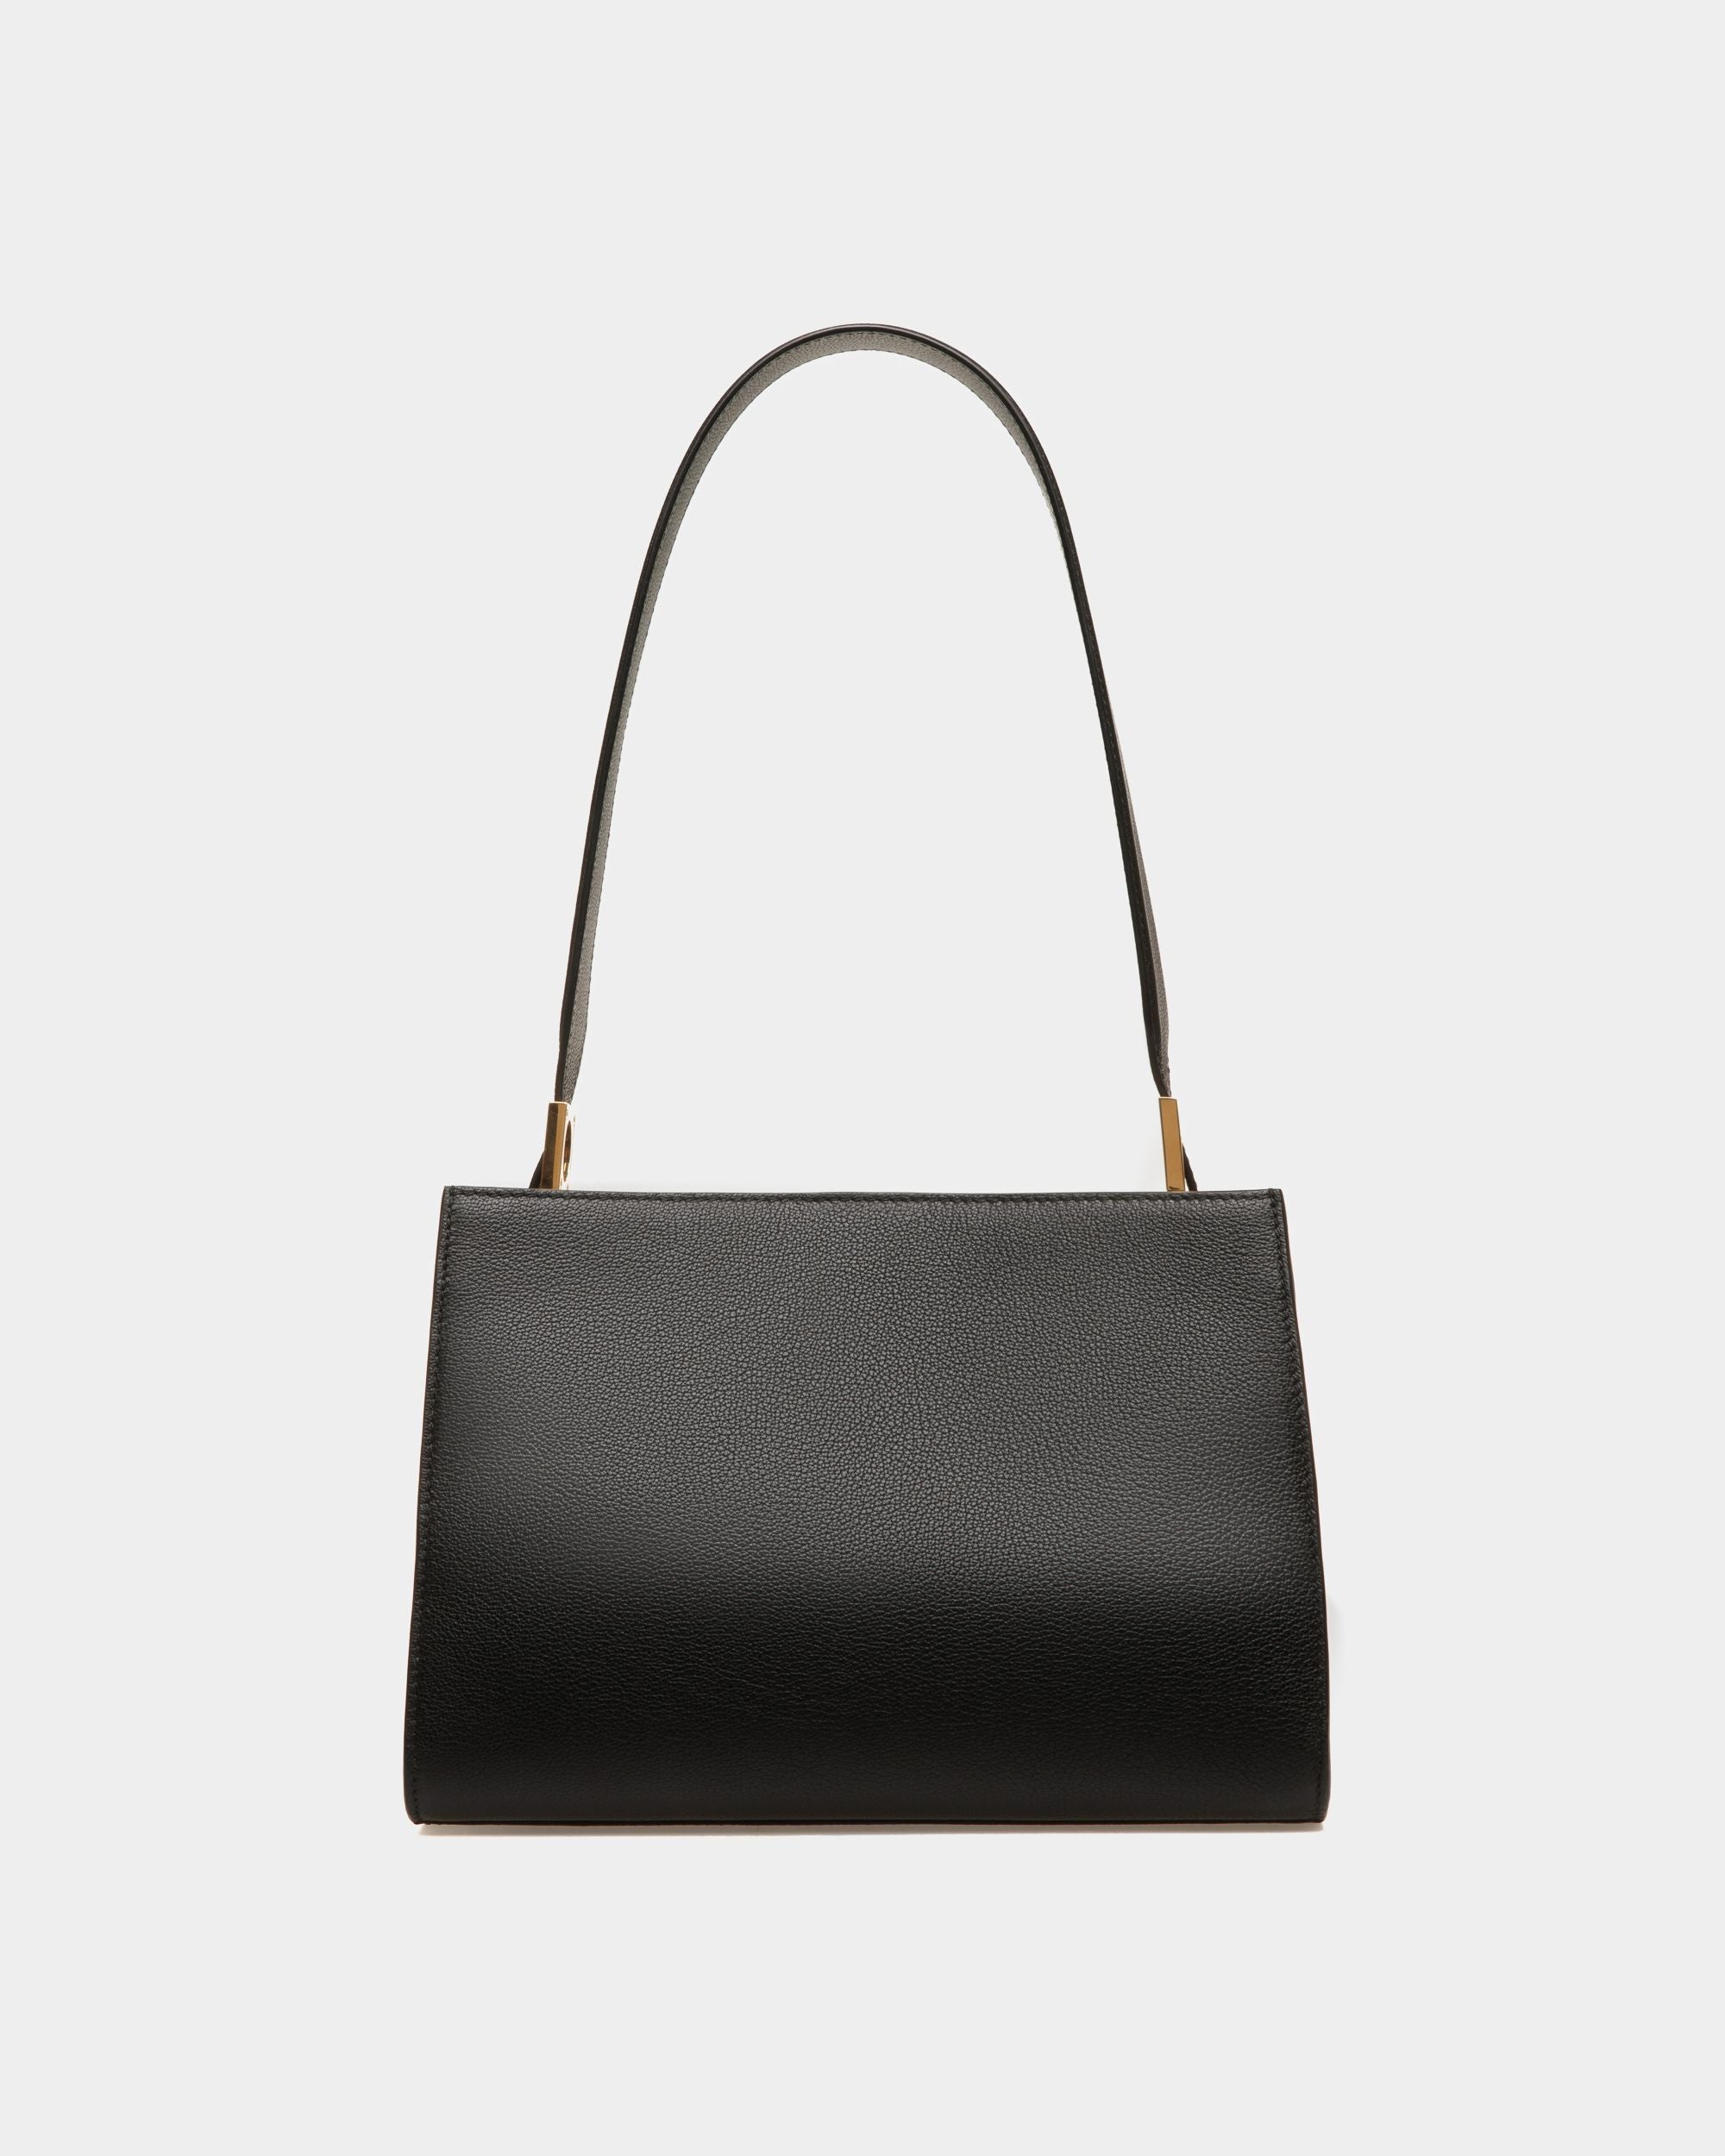 Emblem | Women's Shoulder Bag in Black Grained Leather | Bally | Still Life Back